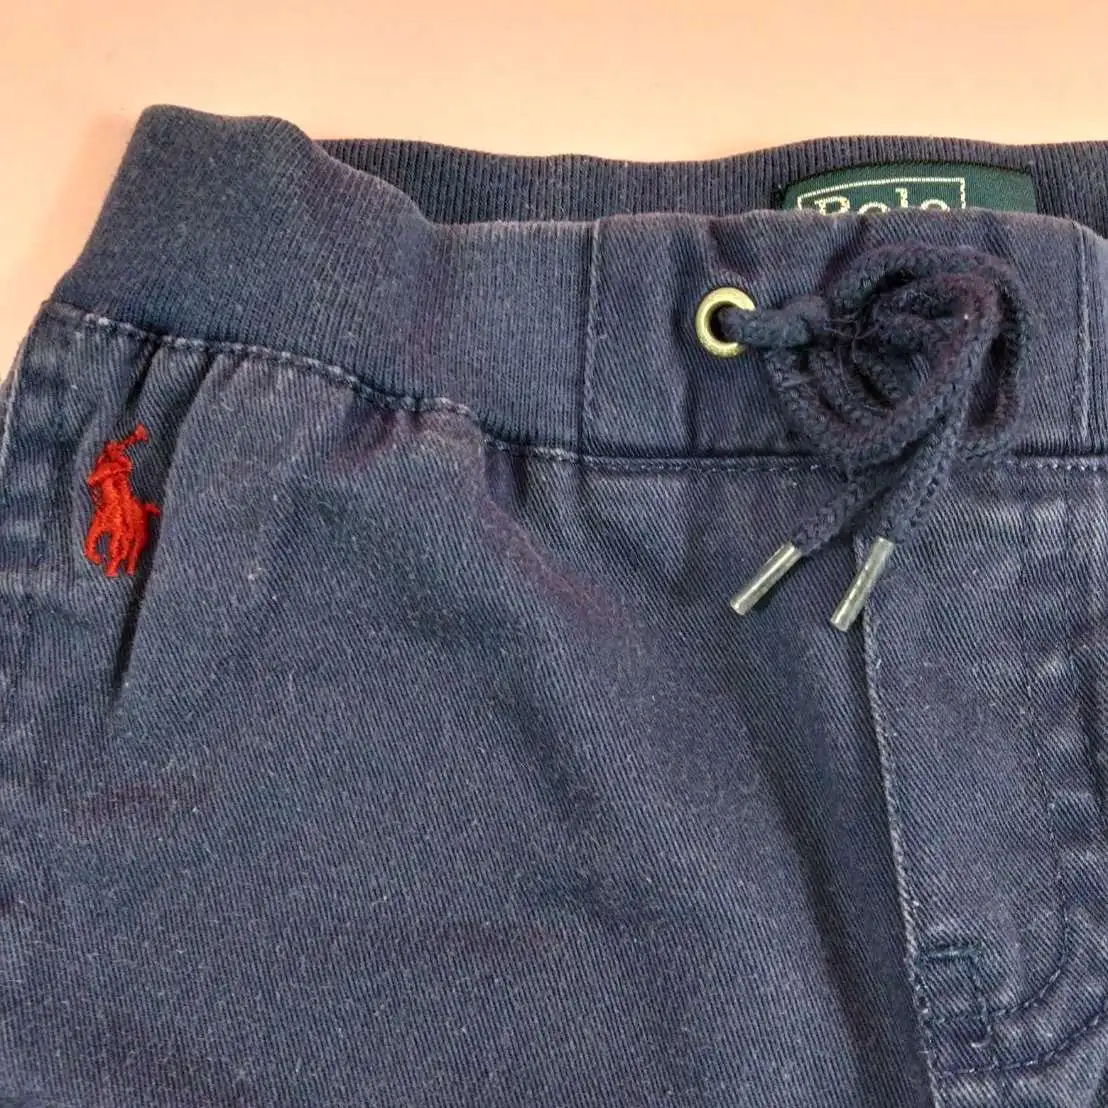 Polo กางเกงขายาวมีกระเป๋าข้างสีกรม ไซส์12m